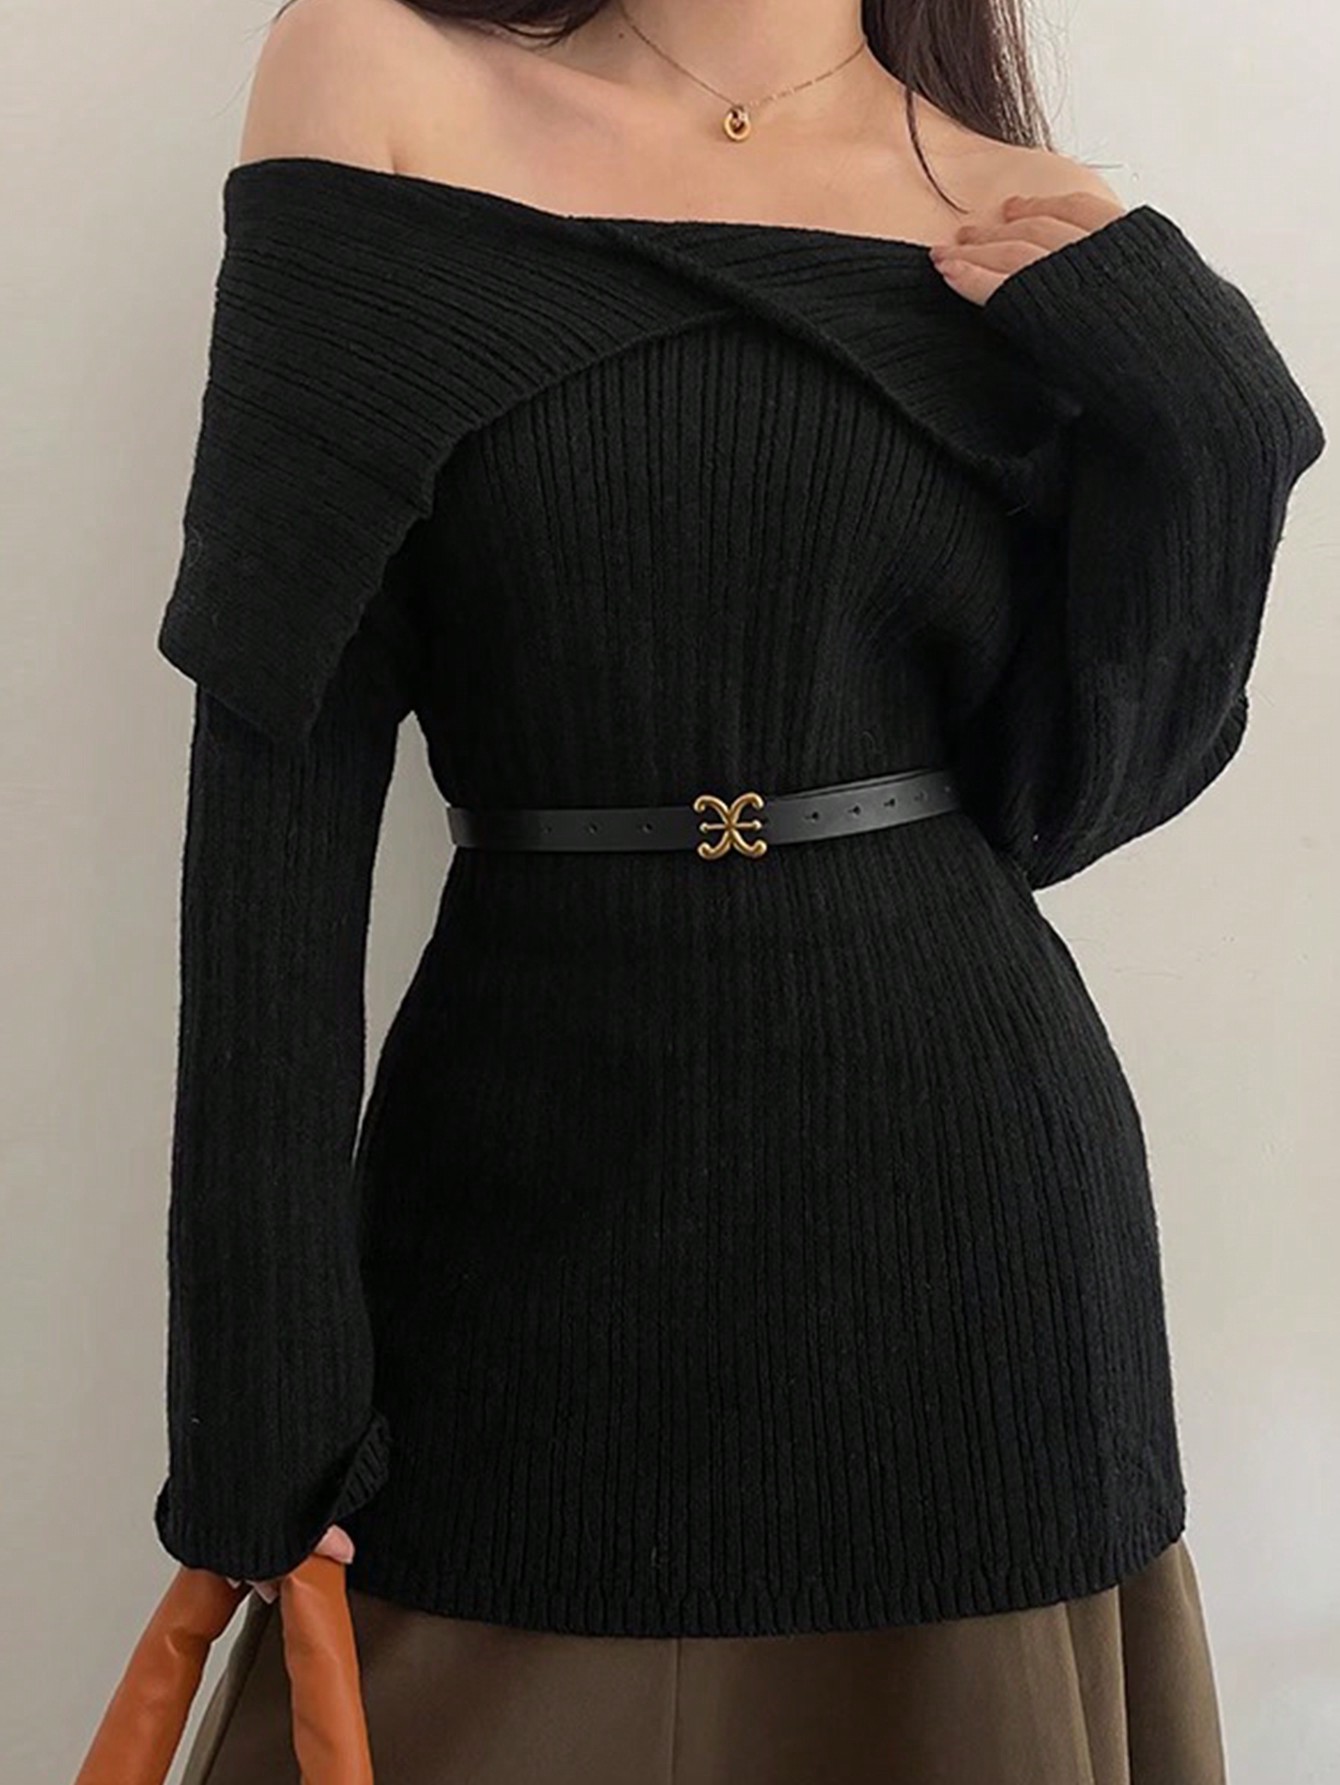 1 шт. женский модный ремень из искусственной кожи с металлической пряжкой; Декоративный пояс в стиле ретро для свитеров, черный